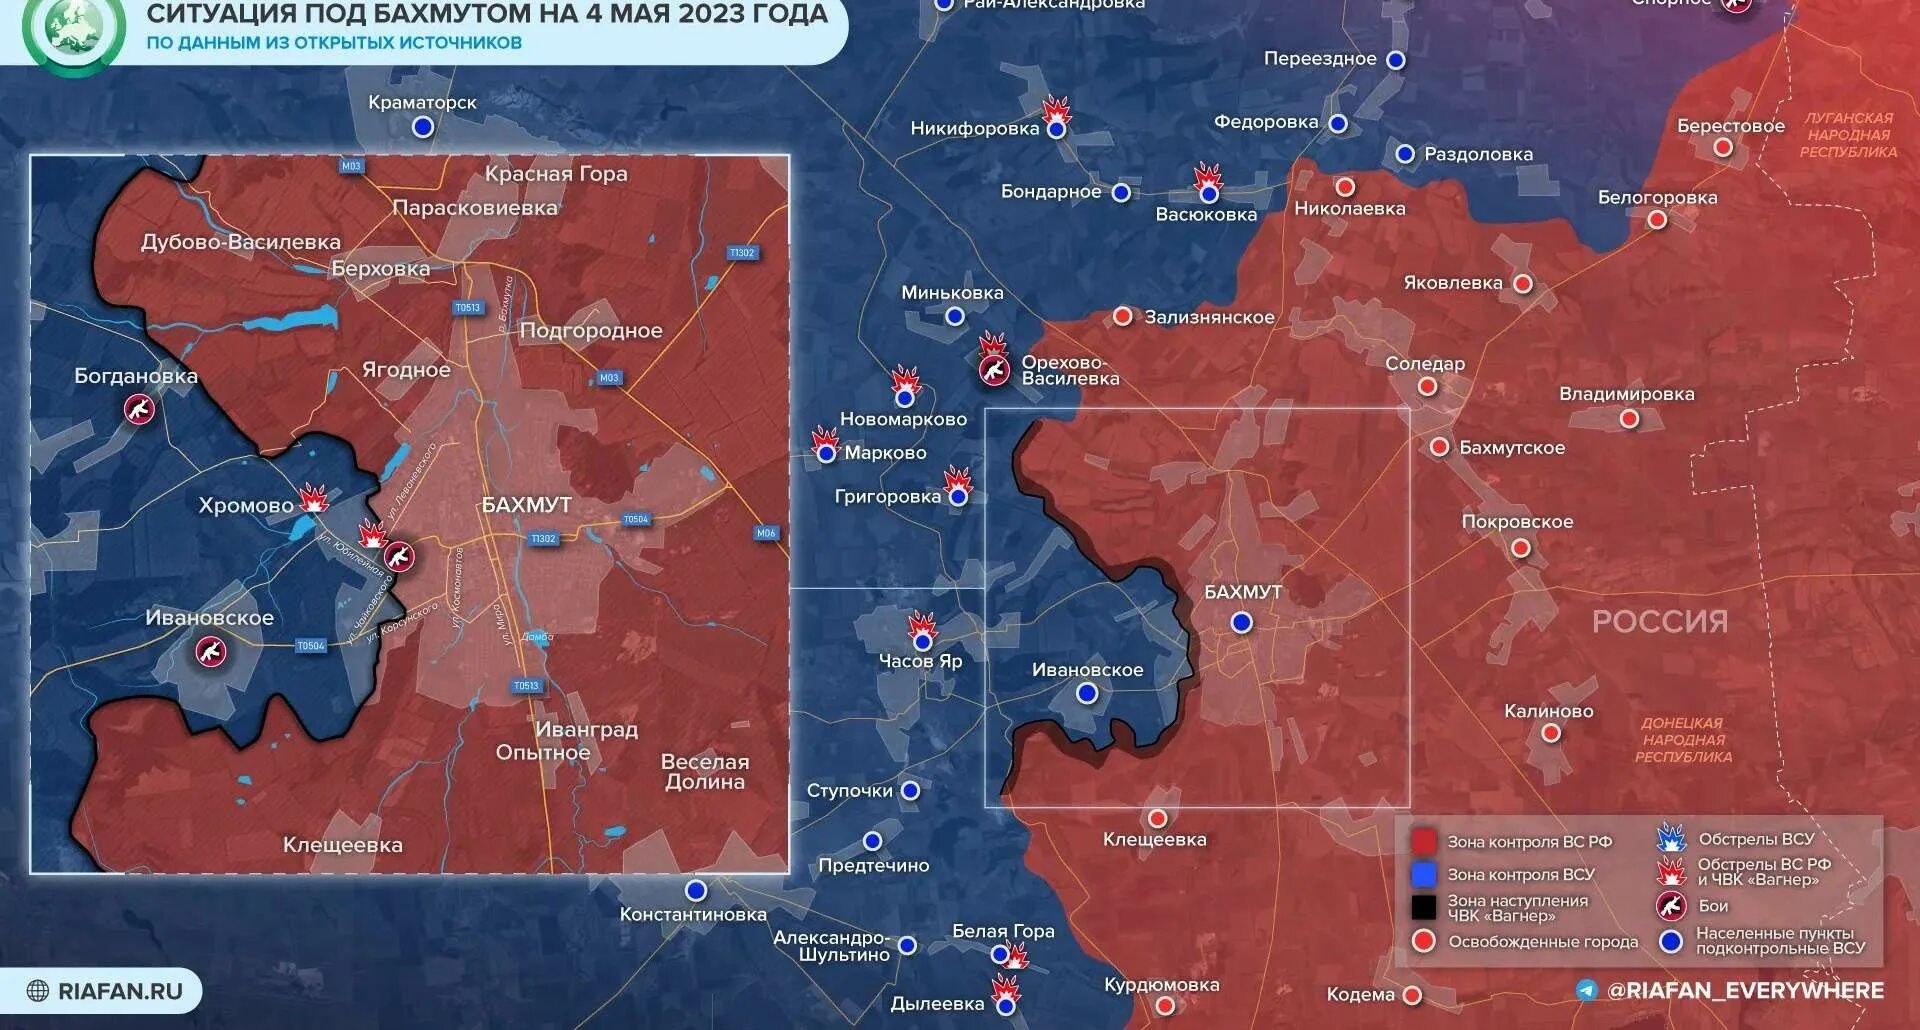 Где сейчас наши войска карта. Карта боевых действий на УК. Карта боевых действий на Украине на сегодня 2023 май. ЕКАРТА боевых действий на Украине сегодня. Карта военных действий на сегодня.